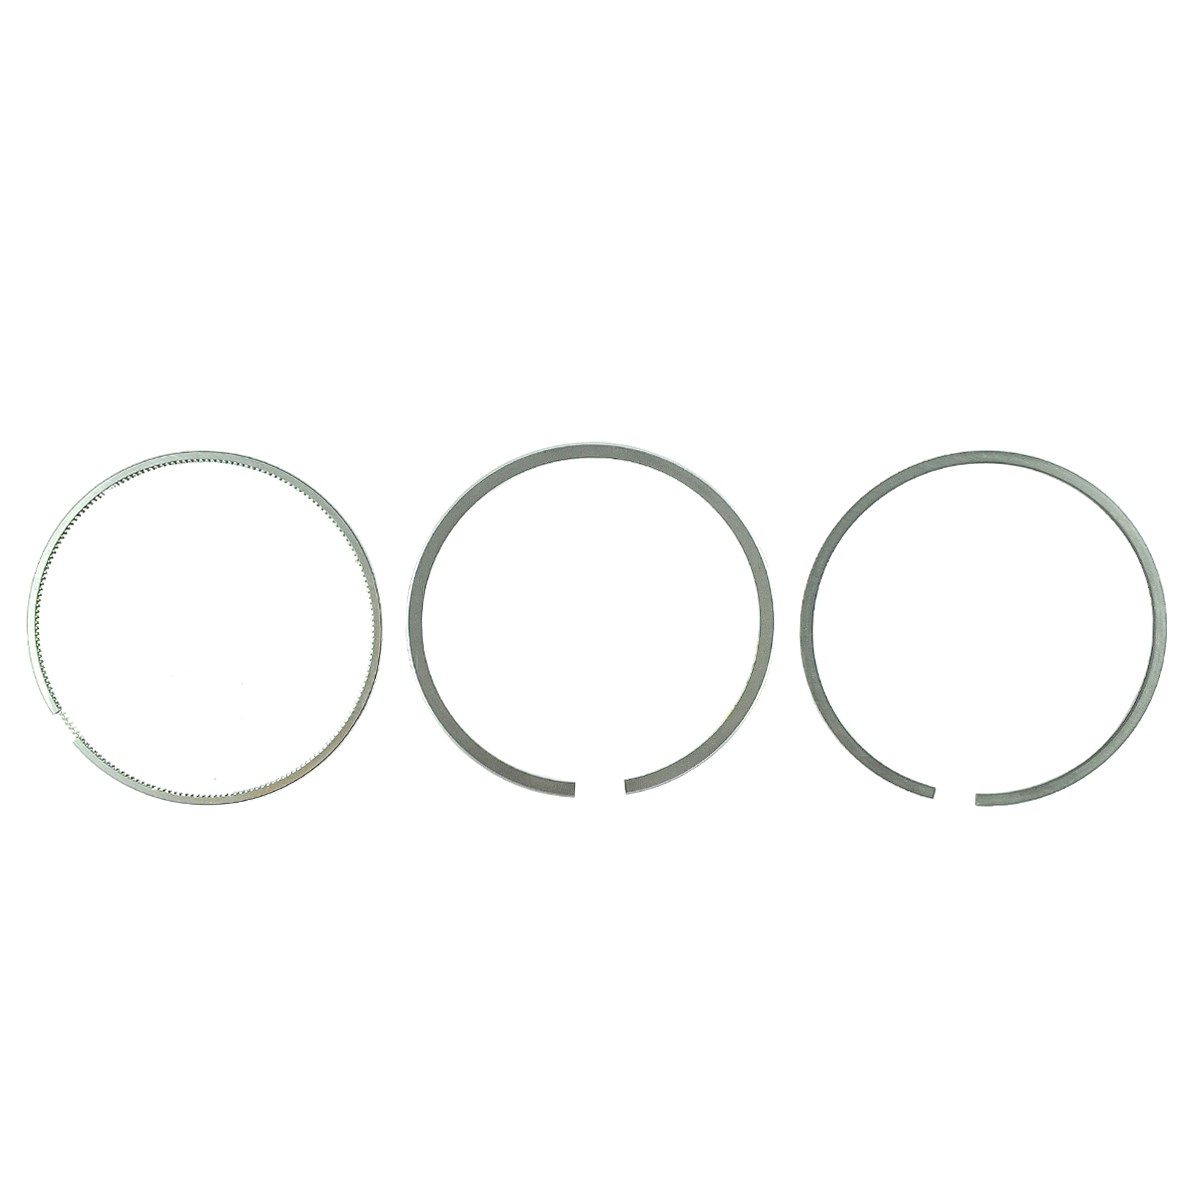 Piston rings / Ø 98 mm / 2.00 x 2.00 x 3.00 mm / Kubota V3300/V3600 / Kubota M8200/M9000 / 1C011-21050 / 6-26-100-75